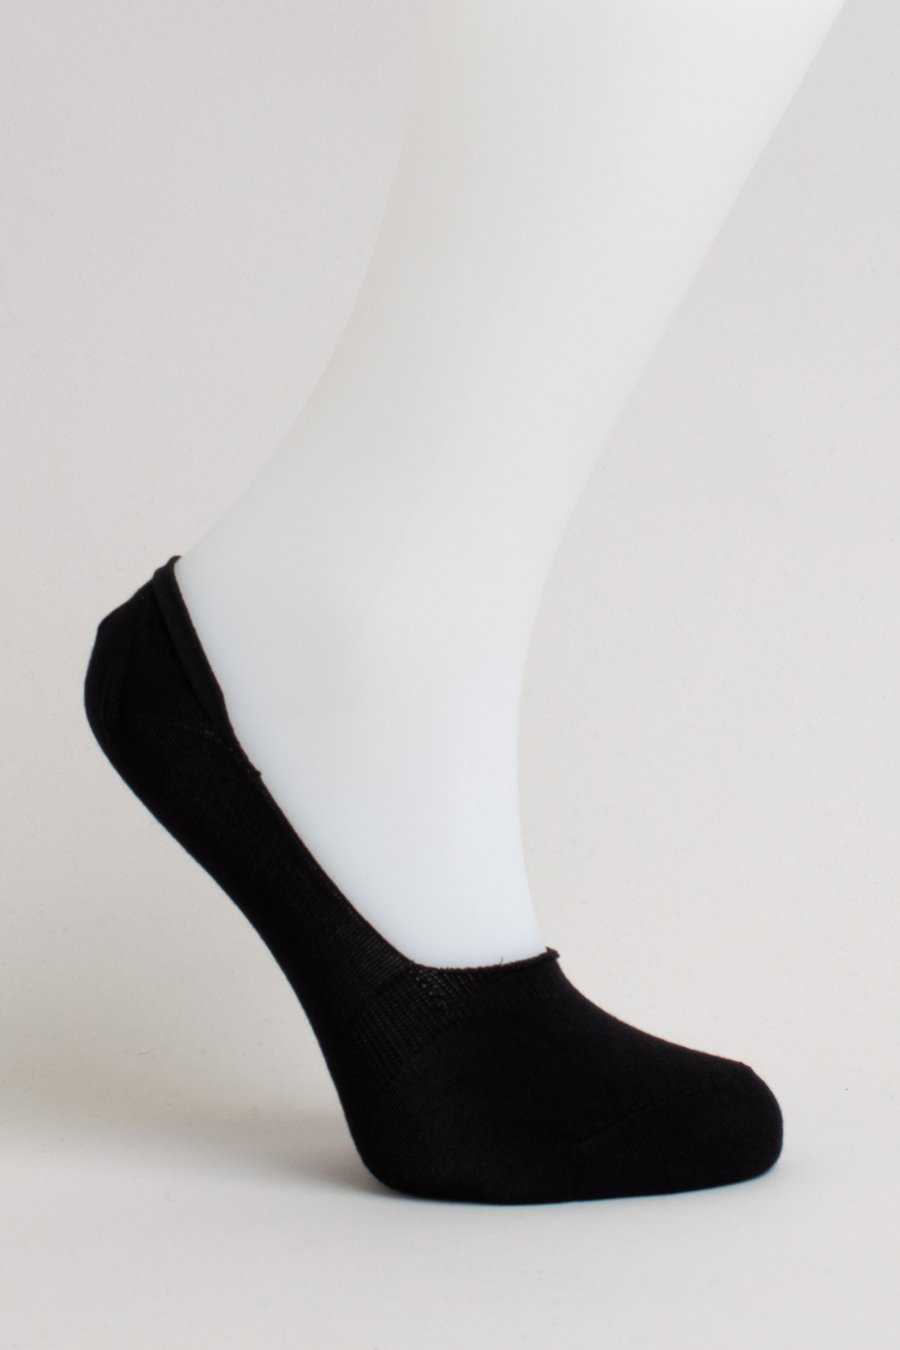 Women's White Ankle Socks - Nothing New®